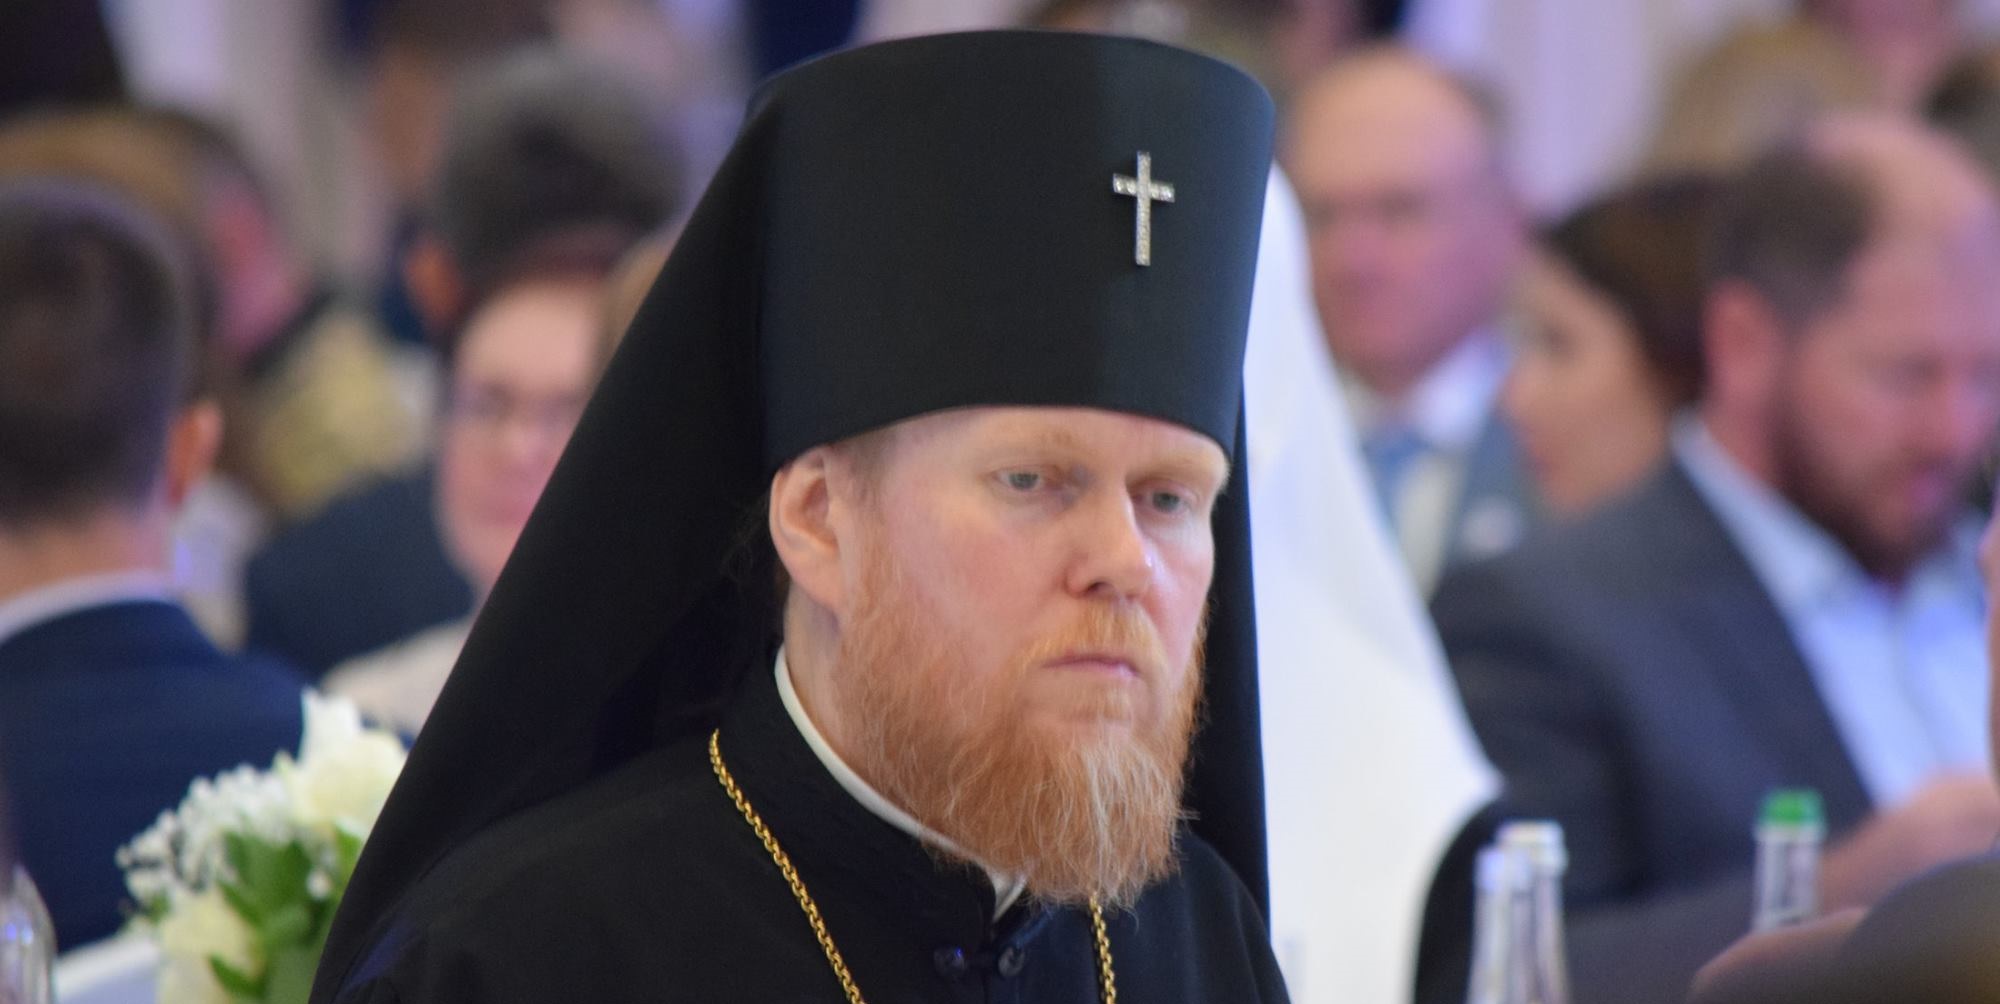 УПЦ КП определилась с кандидатом на пост главы единой церкви